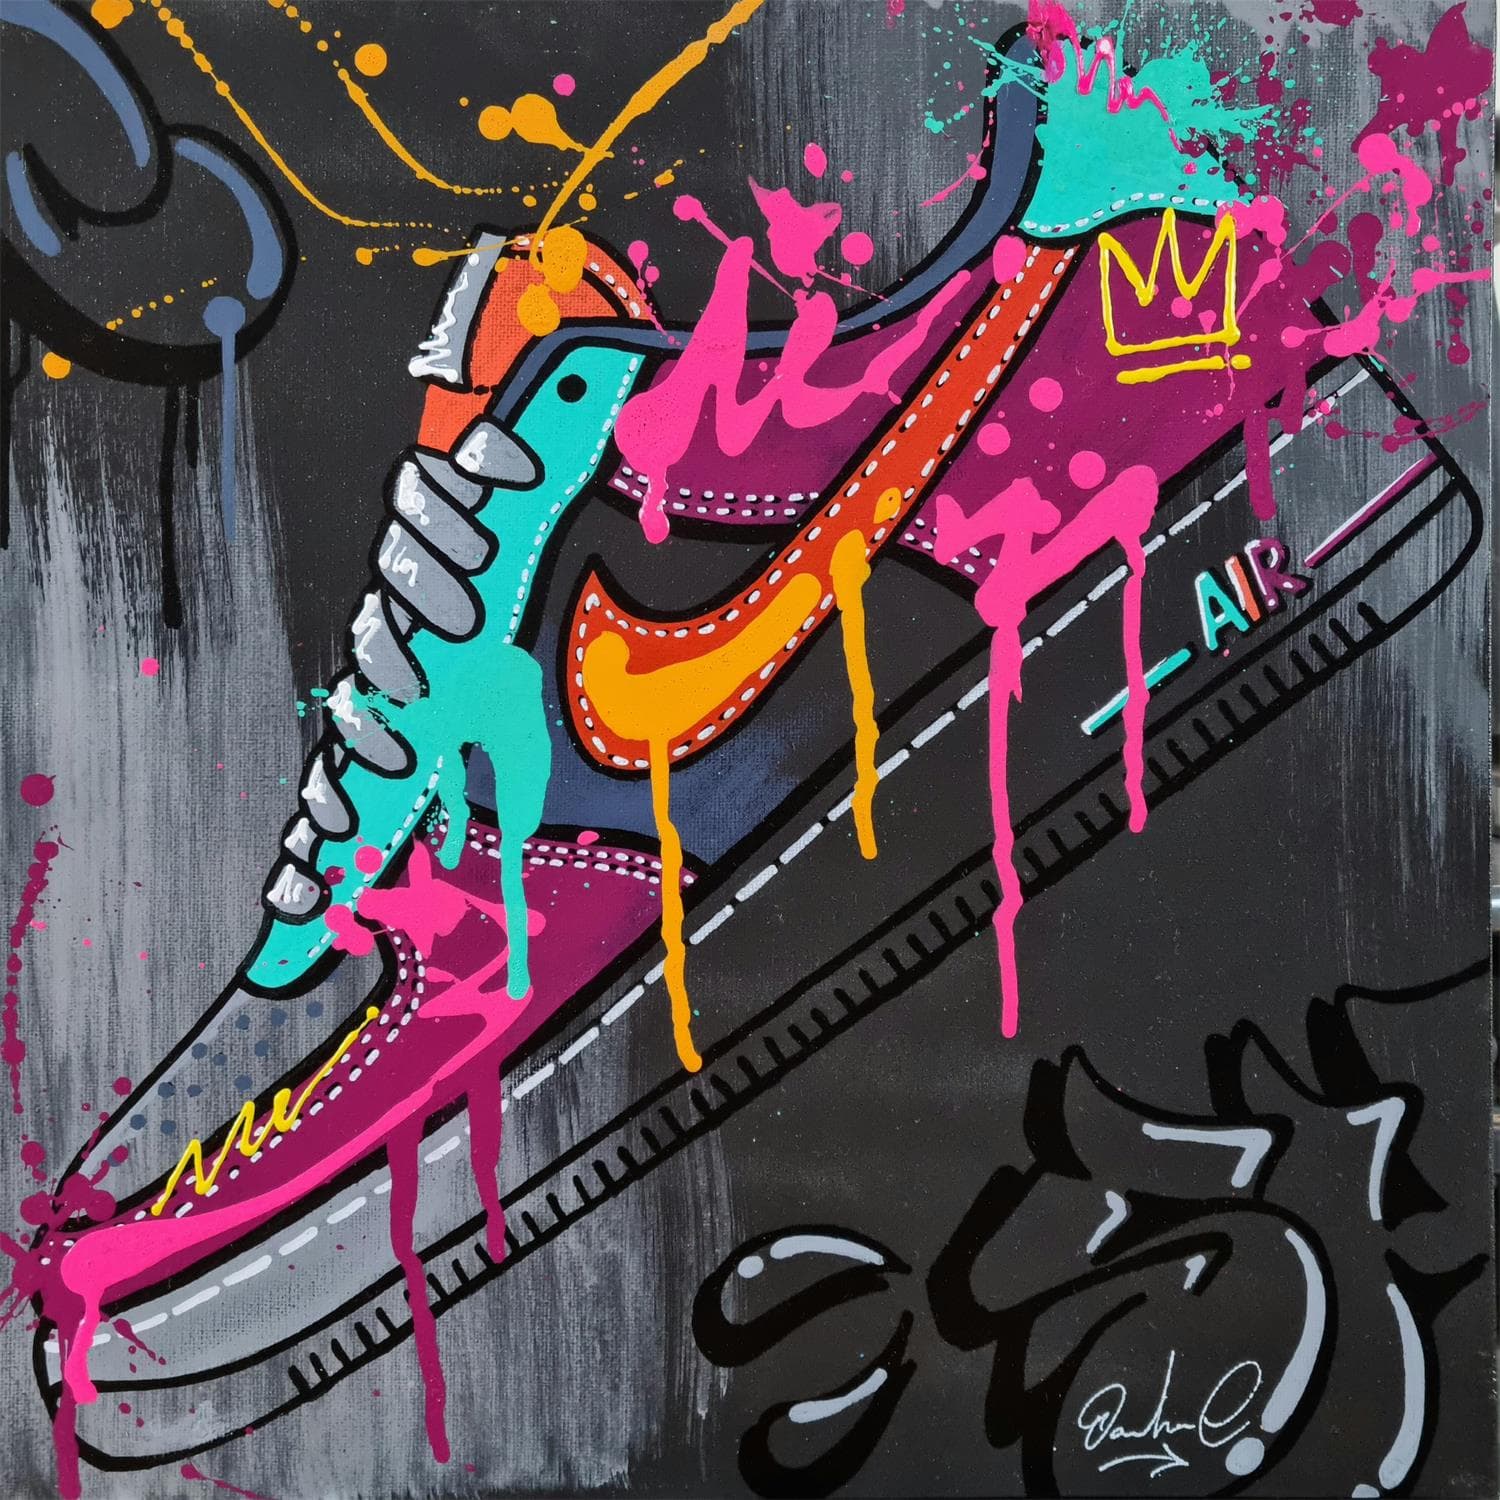 Tableau Street Art Nike Air Gold